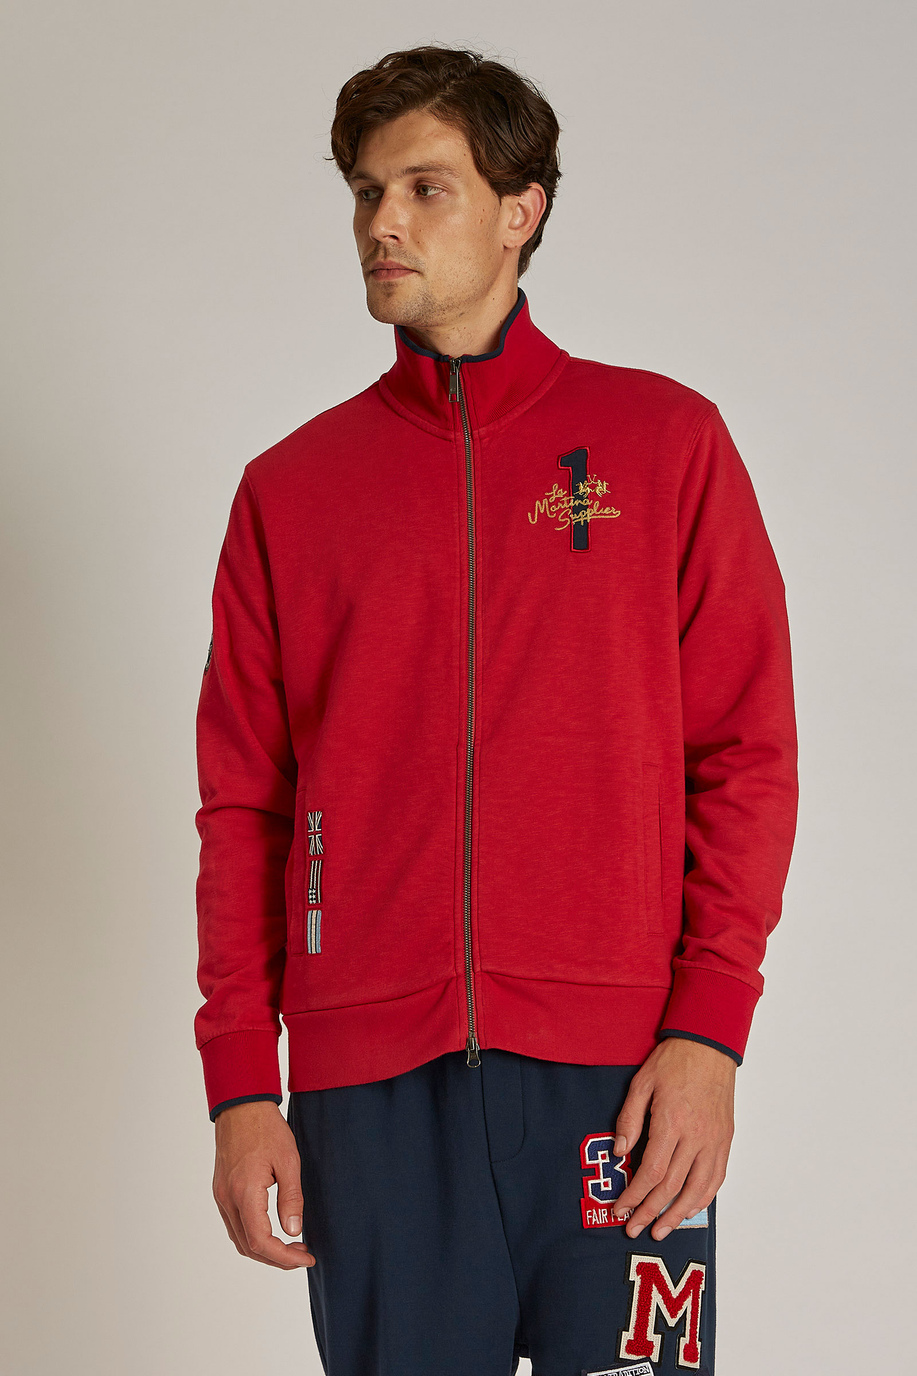 Men's regular-fit zip-up sweatshirt in 100% cotton fabric - Knitwear & Sweatshirts | La Martina - Official Online Shop